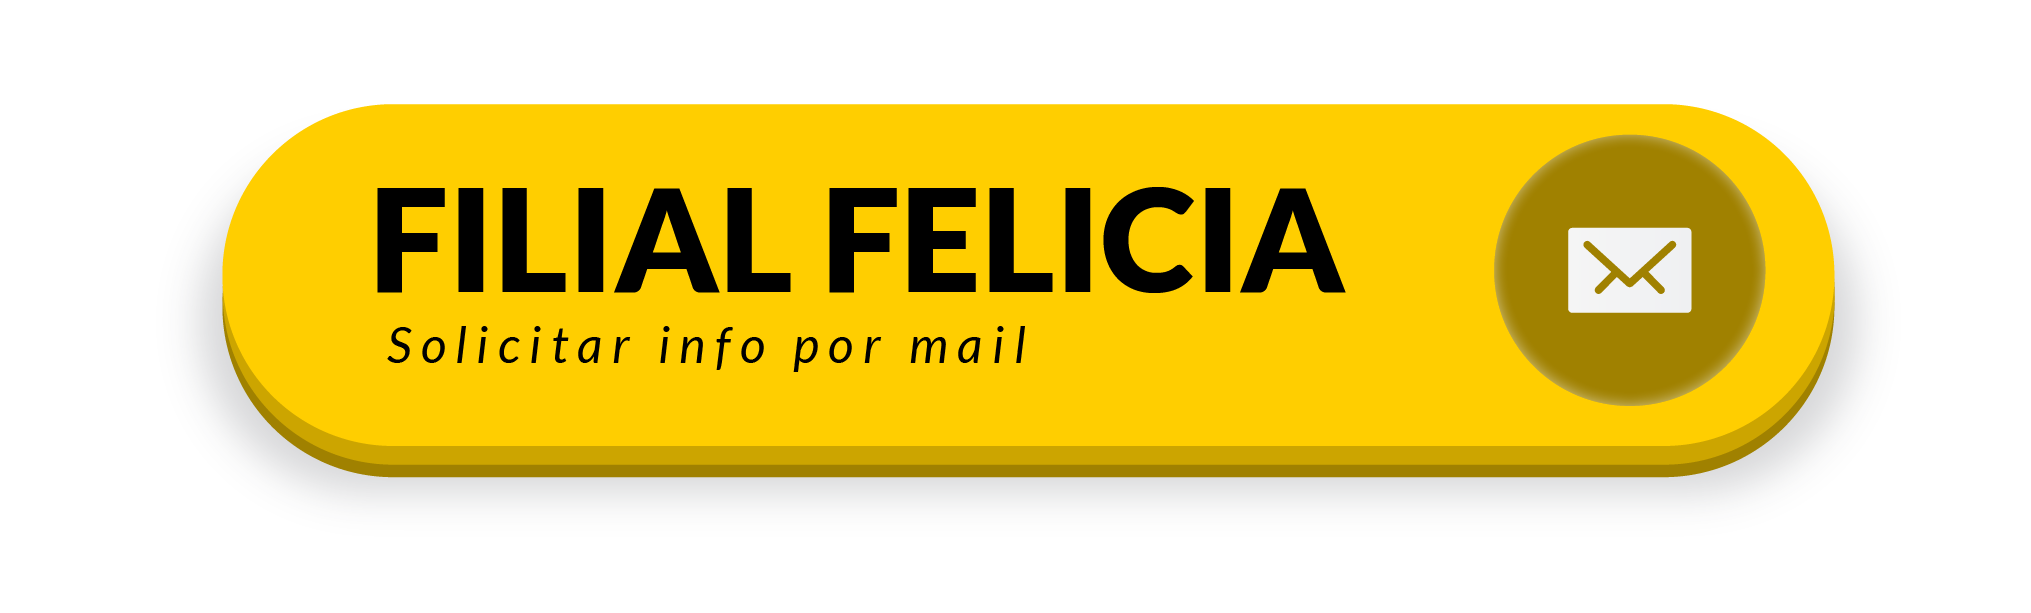 Filial Felicia - Solicitar info de préstamo Tremblay por mail - Mutual del Club Atlético Pilar-01-01